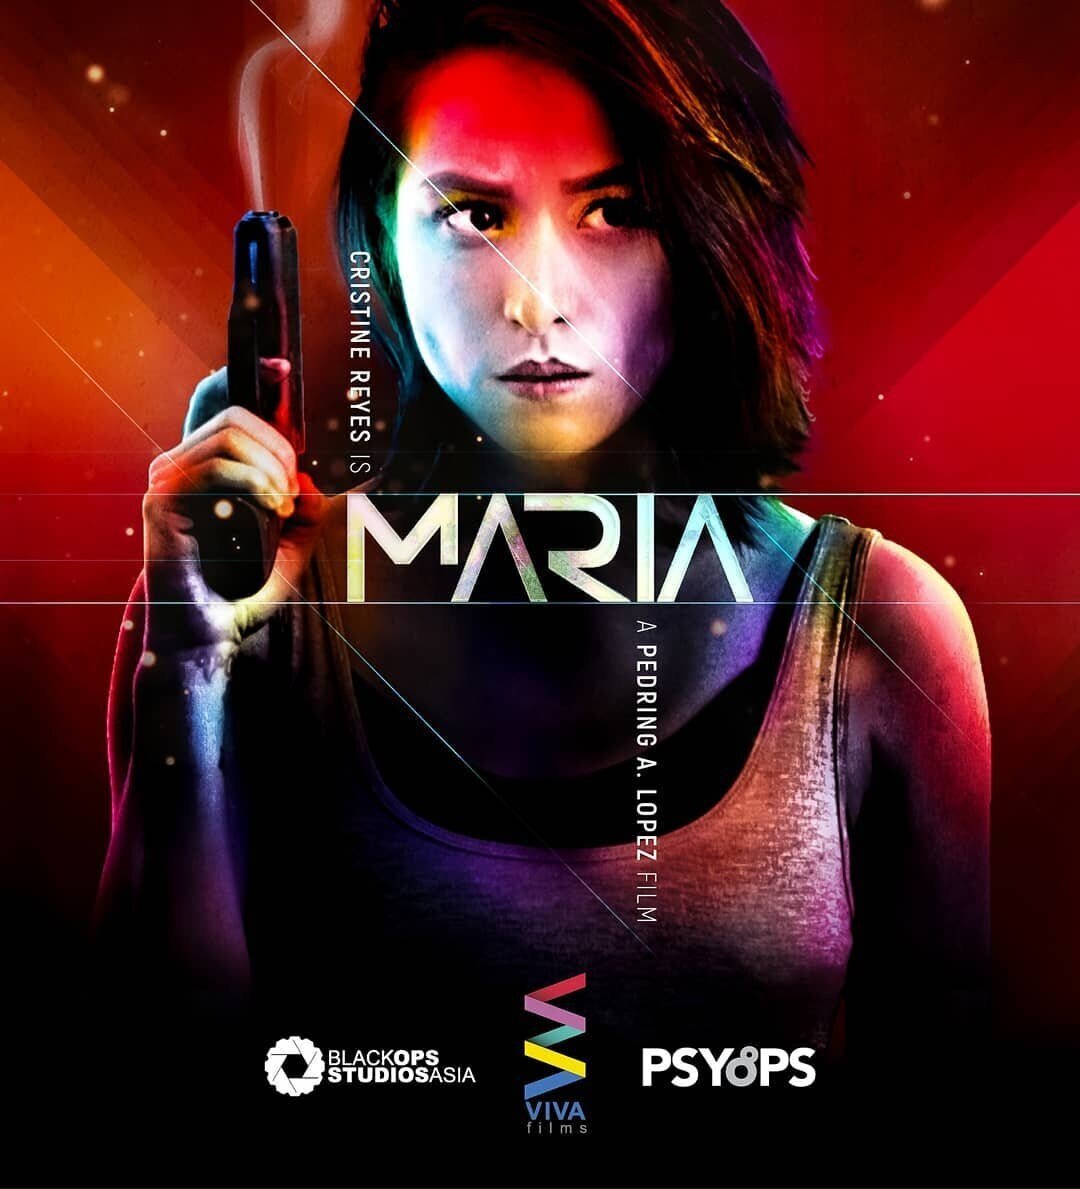 Maria movie